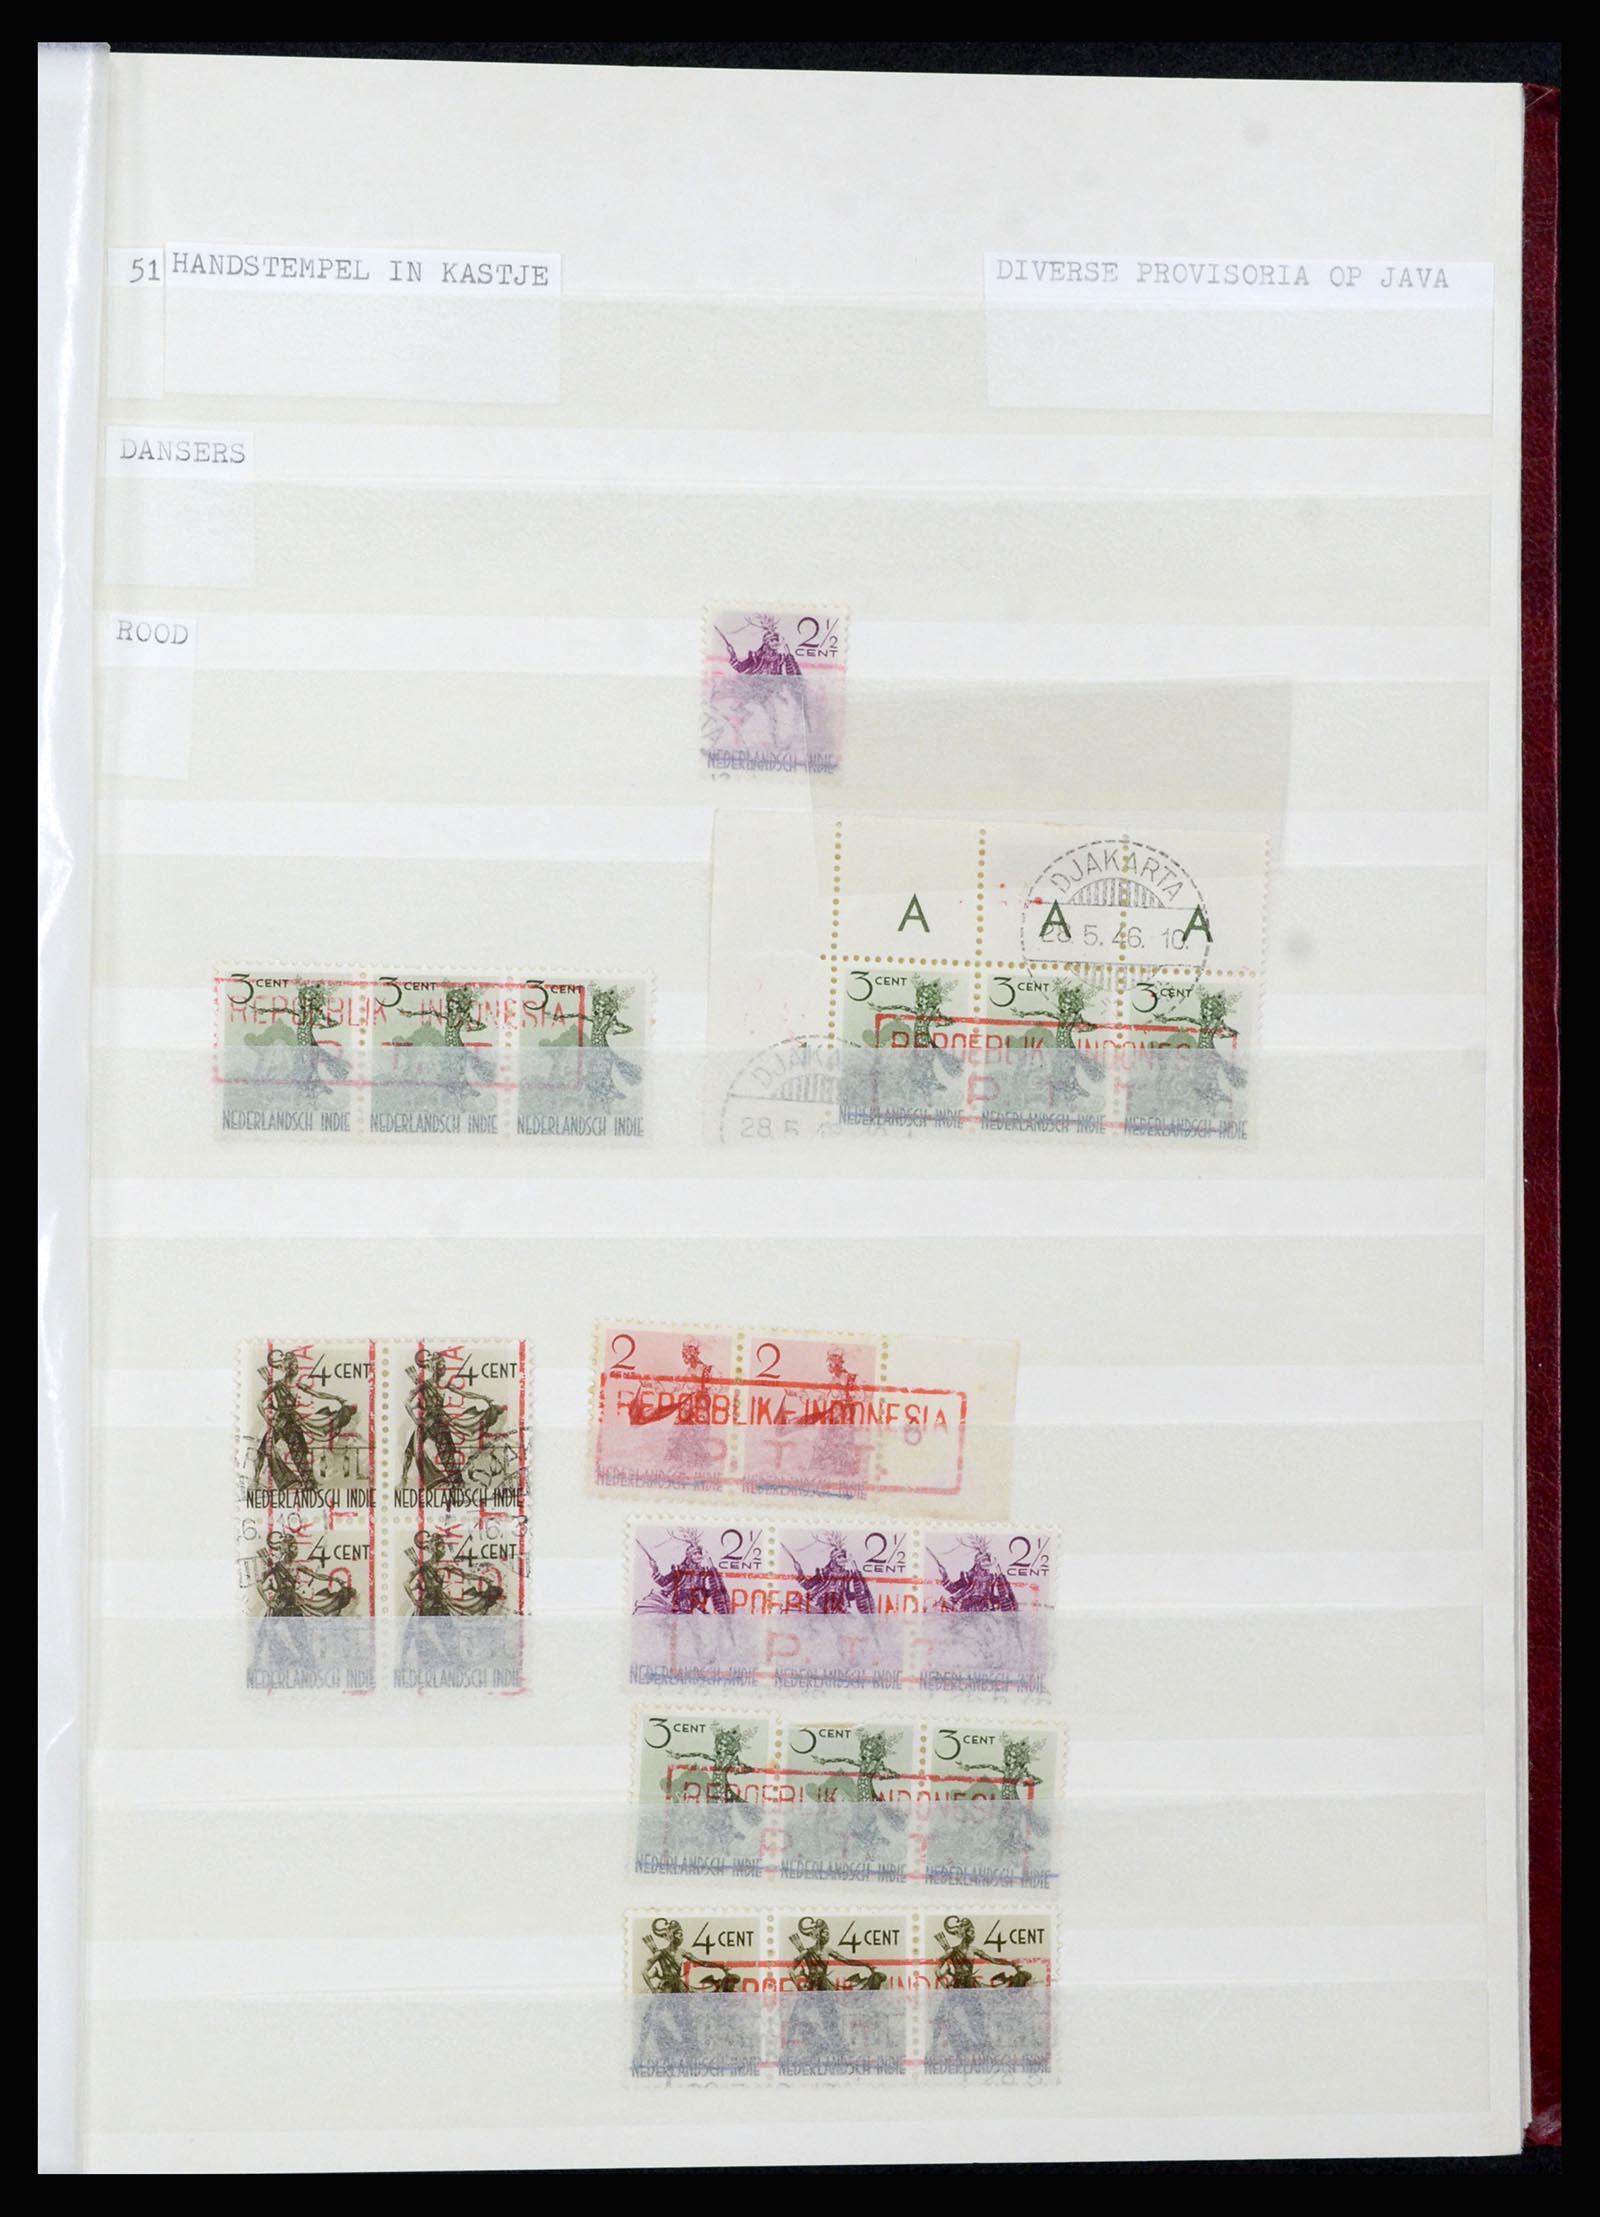 36742 044 - Stamp collection 36742 Dutch Indies interim period 1945-1949.